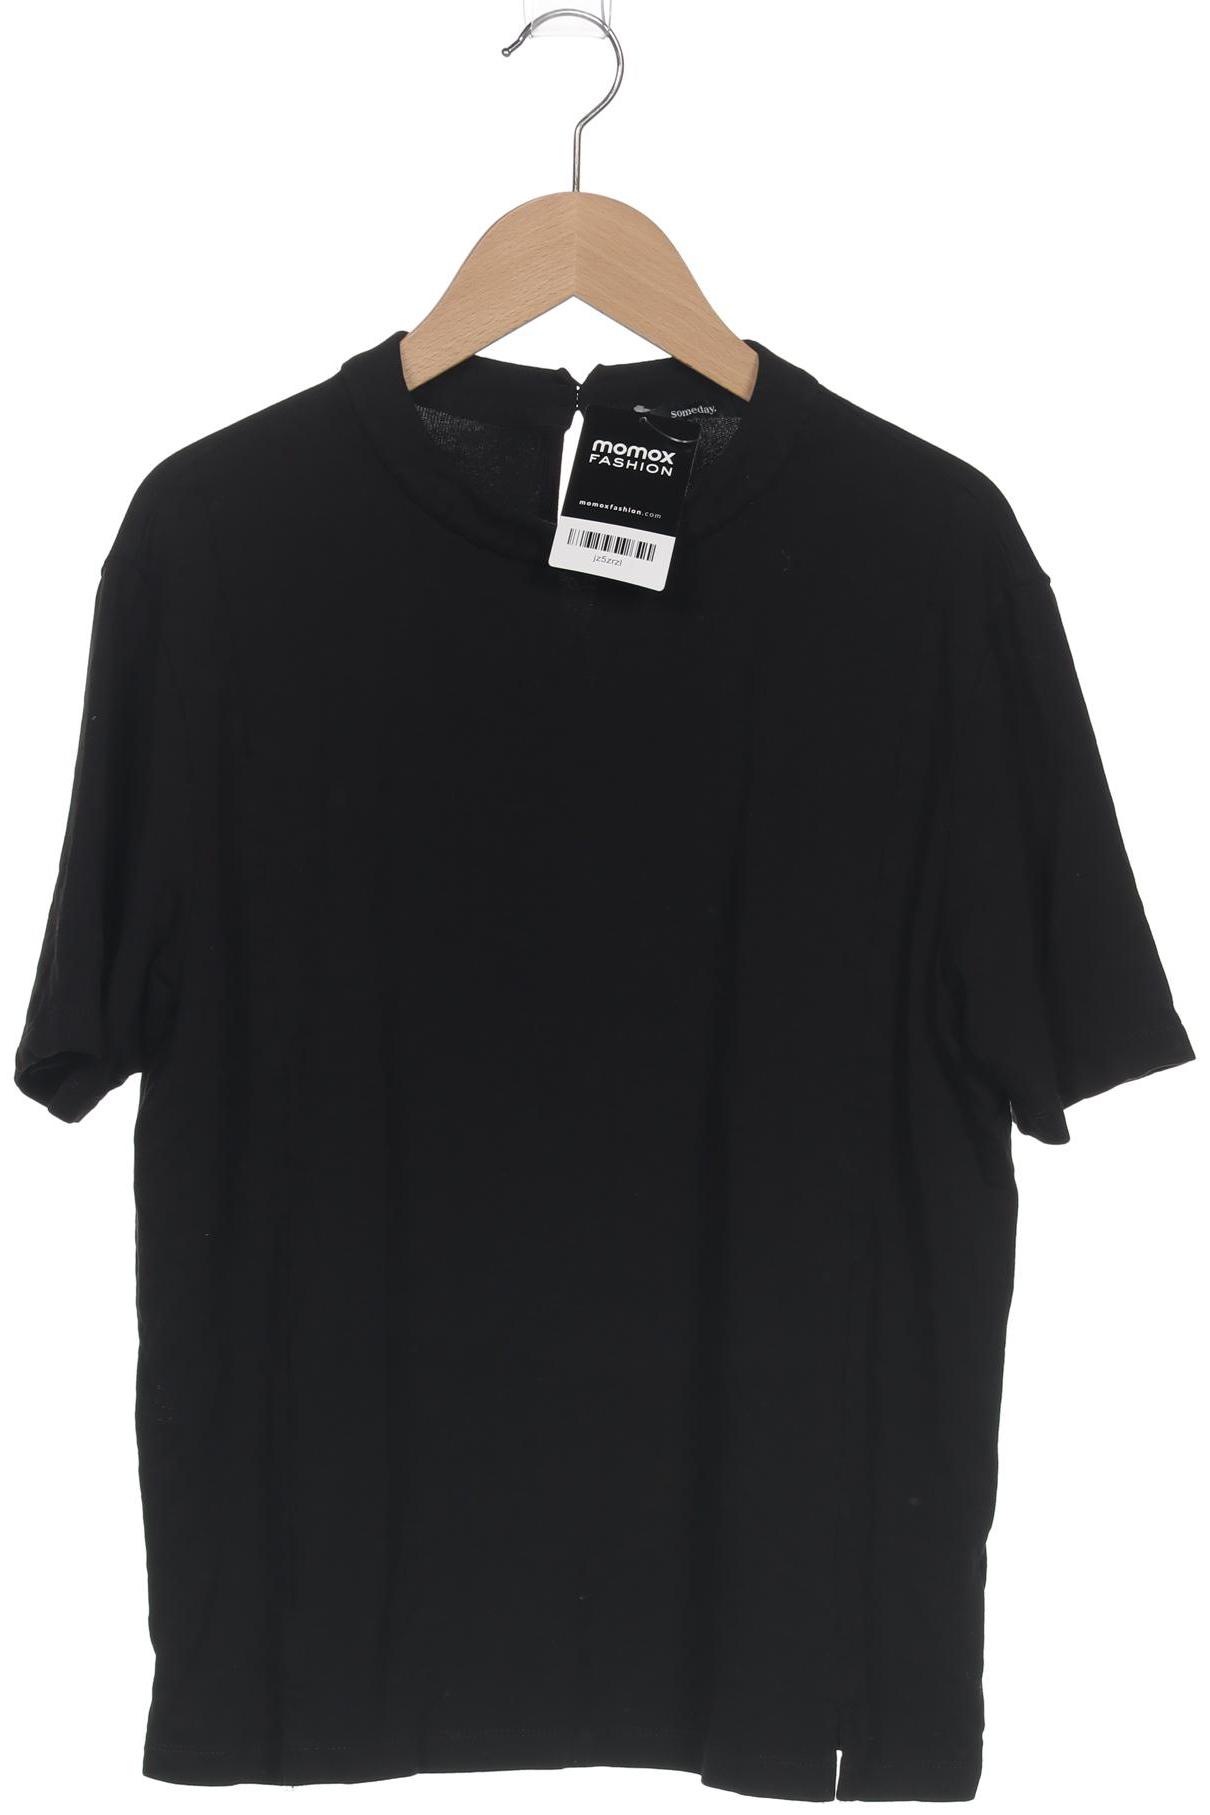 someday. Damen T-Shirt, schwarz, Gr. 40 von someday.